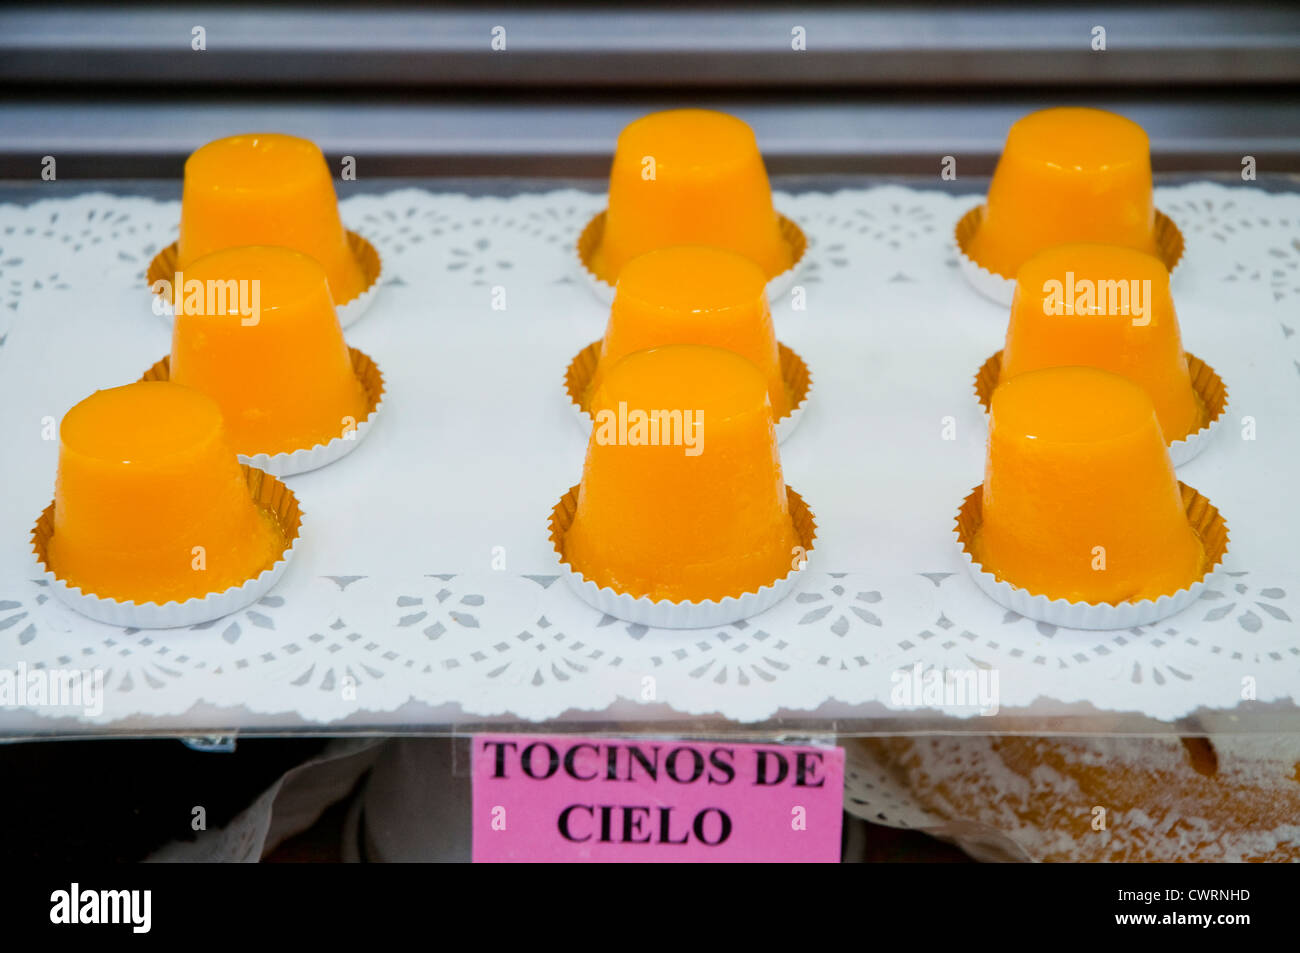 Tocinos de cielo, typical egg creme caramel. Madrid, Spain. Stock Photo